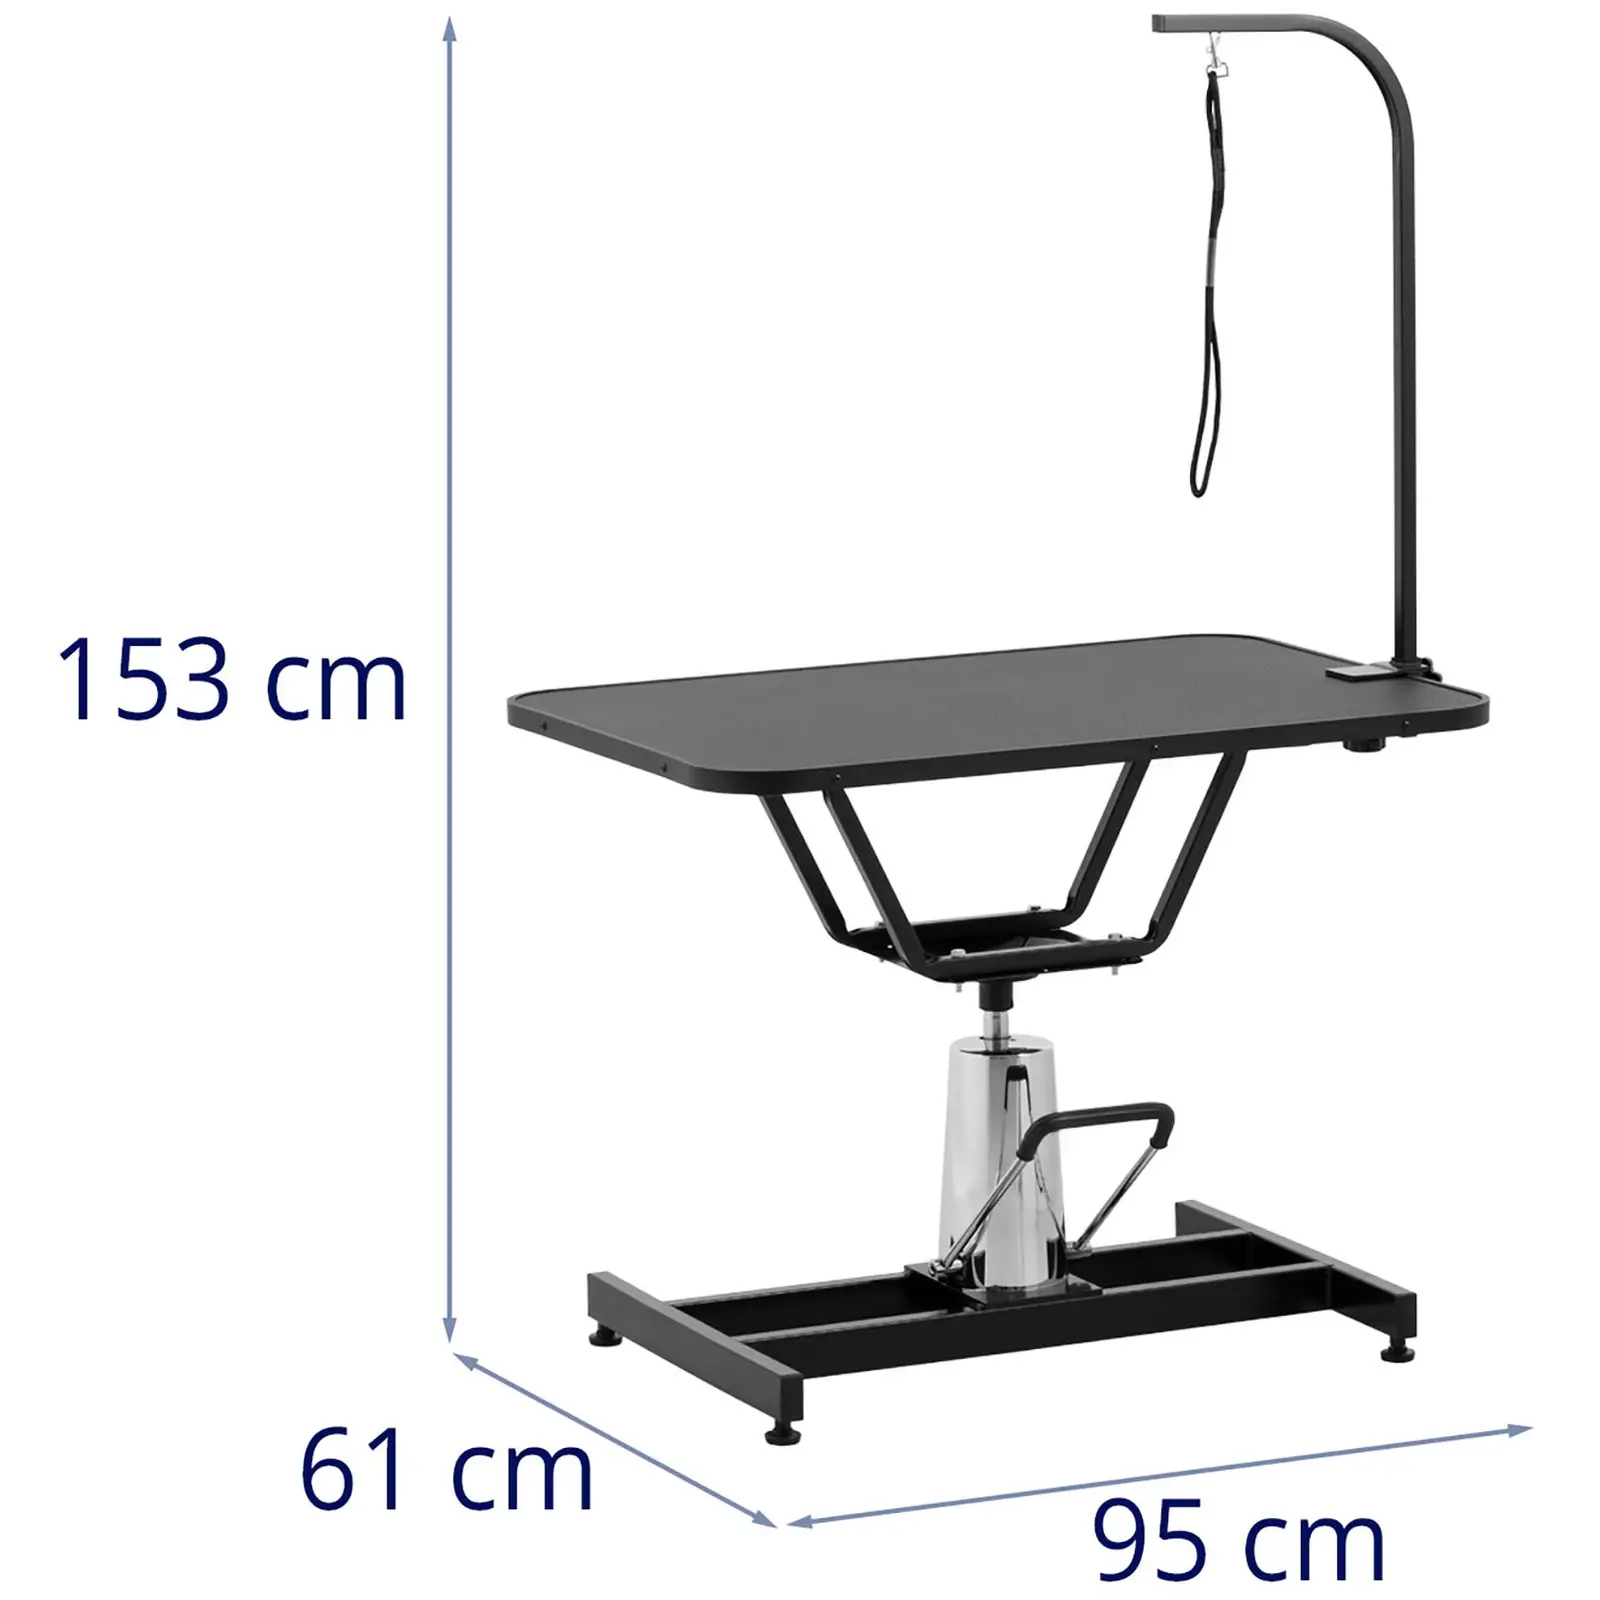 Trimmauspöytä 905 x 605 mm - korkeussäädettävissä 70 - 84 cm - 60 kg - 1 hihna